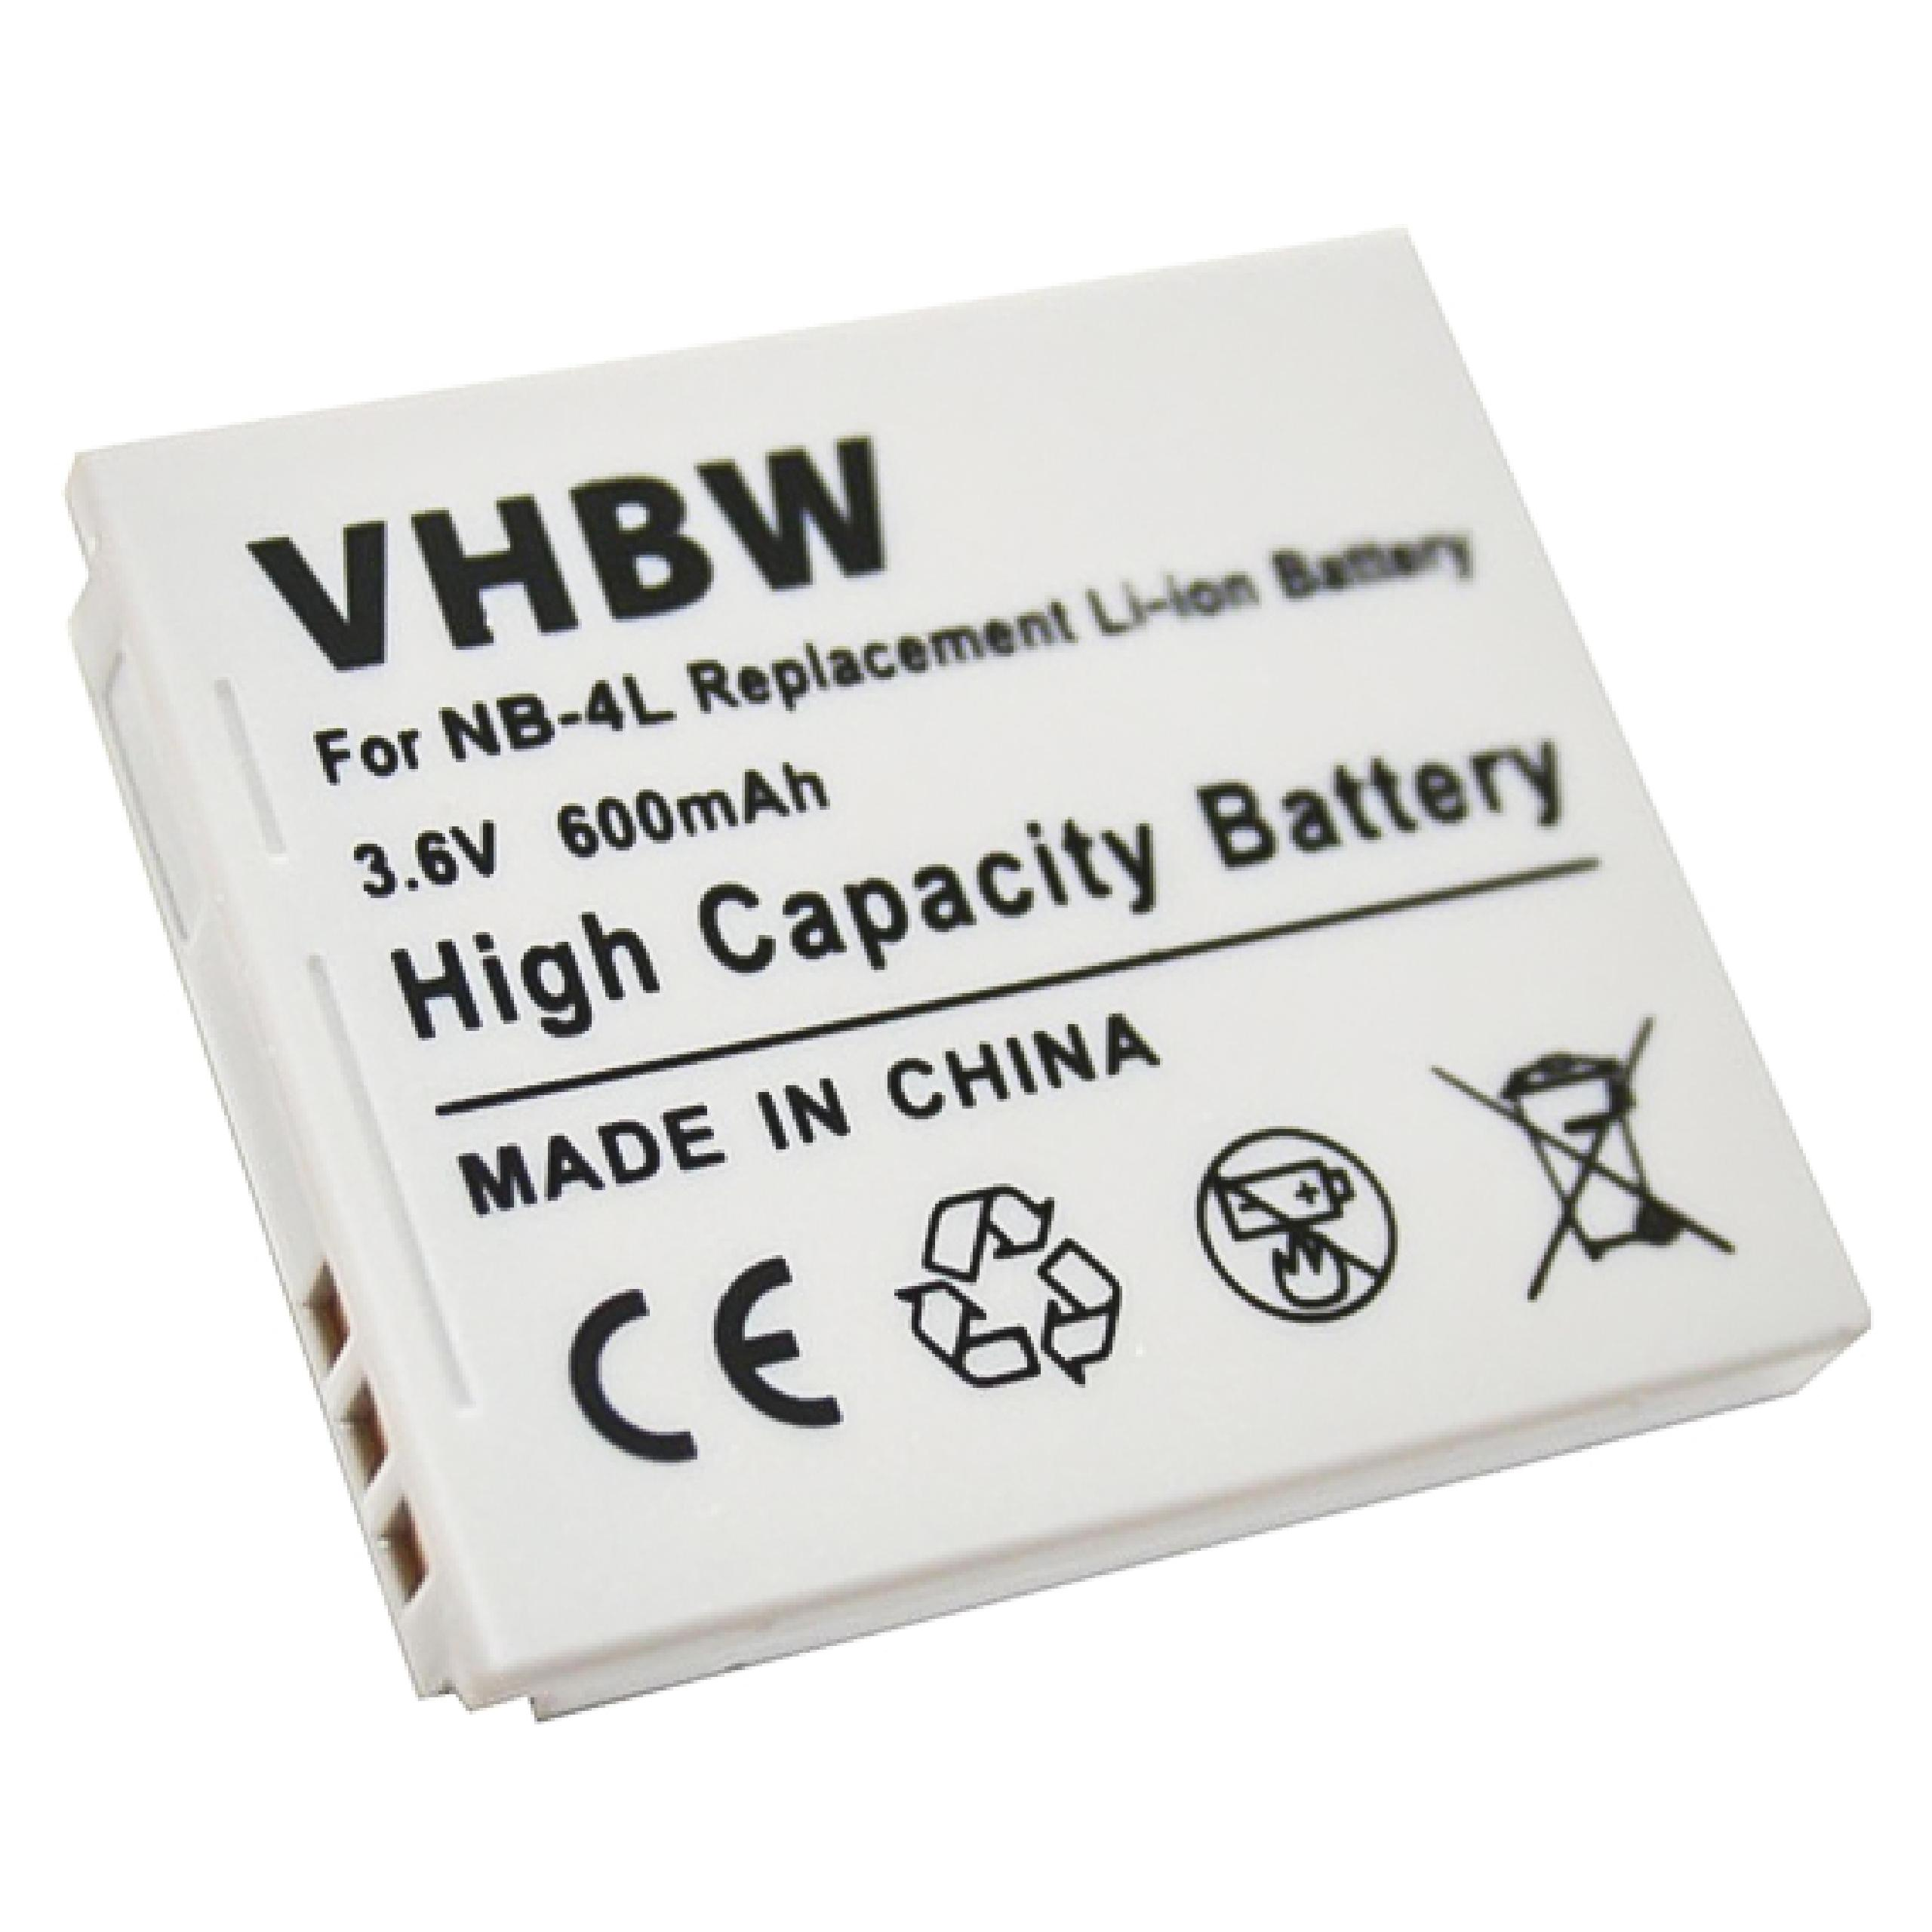 VHBW kompatibel mit Canon Digital 65, 80 i Zoom, is, Volt, 70, Ixus Akku, Li-Ion 82, 75, 3.6 50, Wireless mAh 600 i7, 55, 60